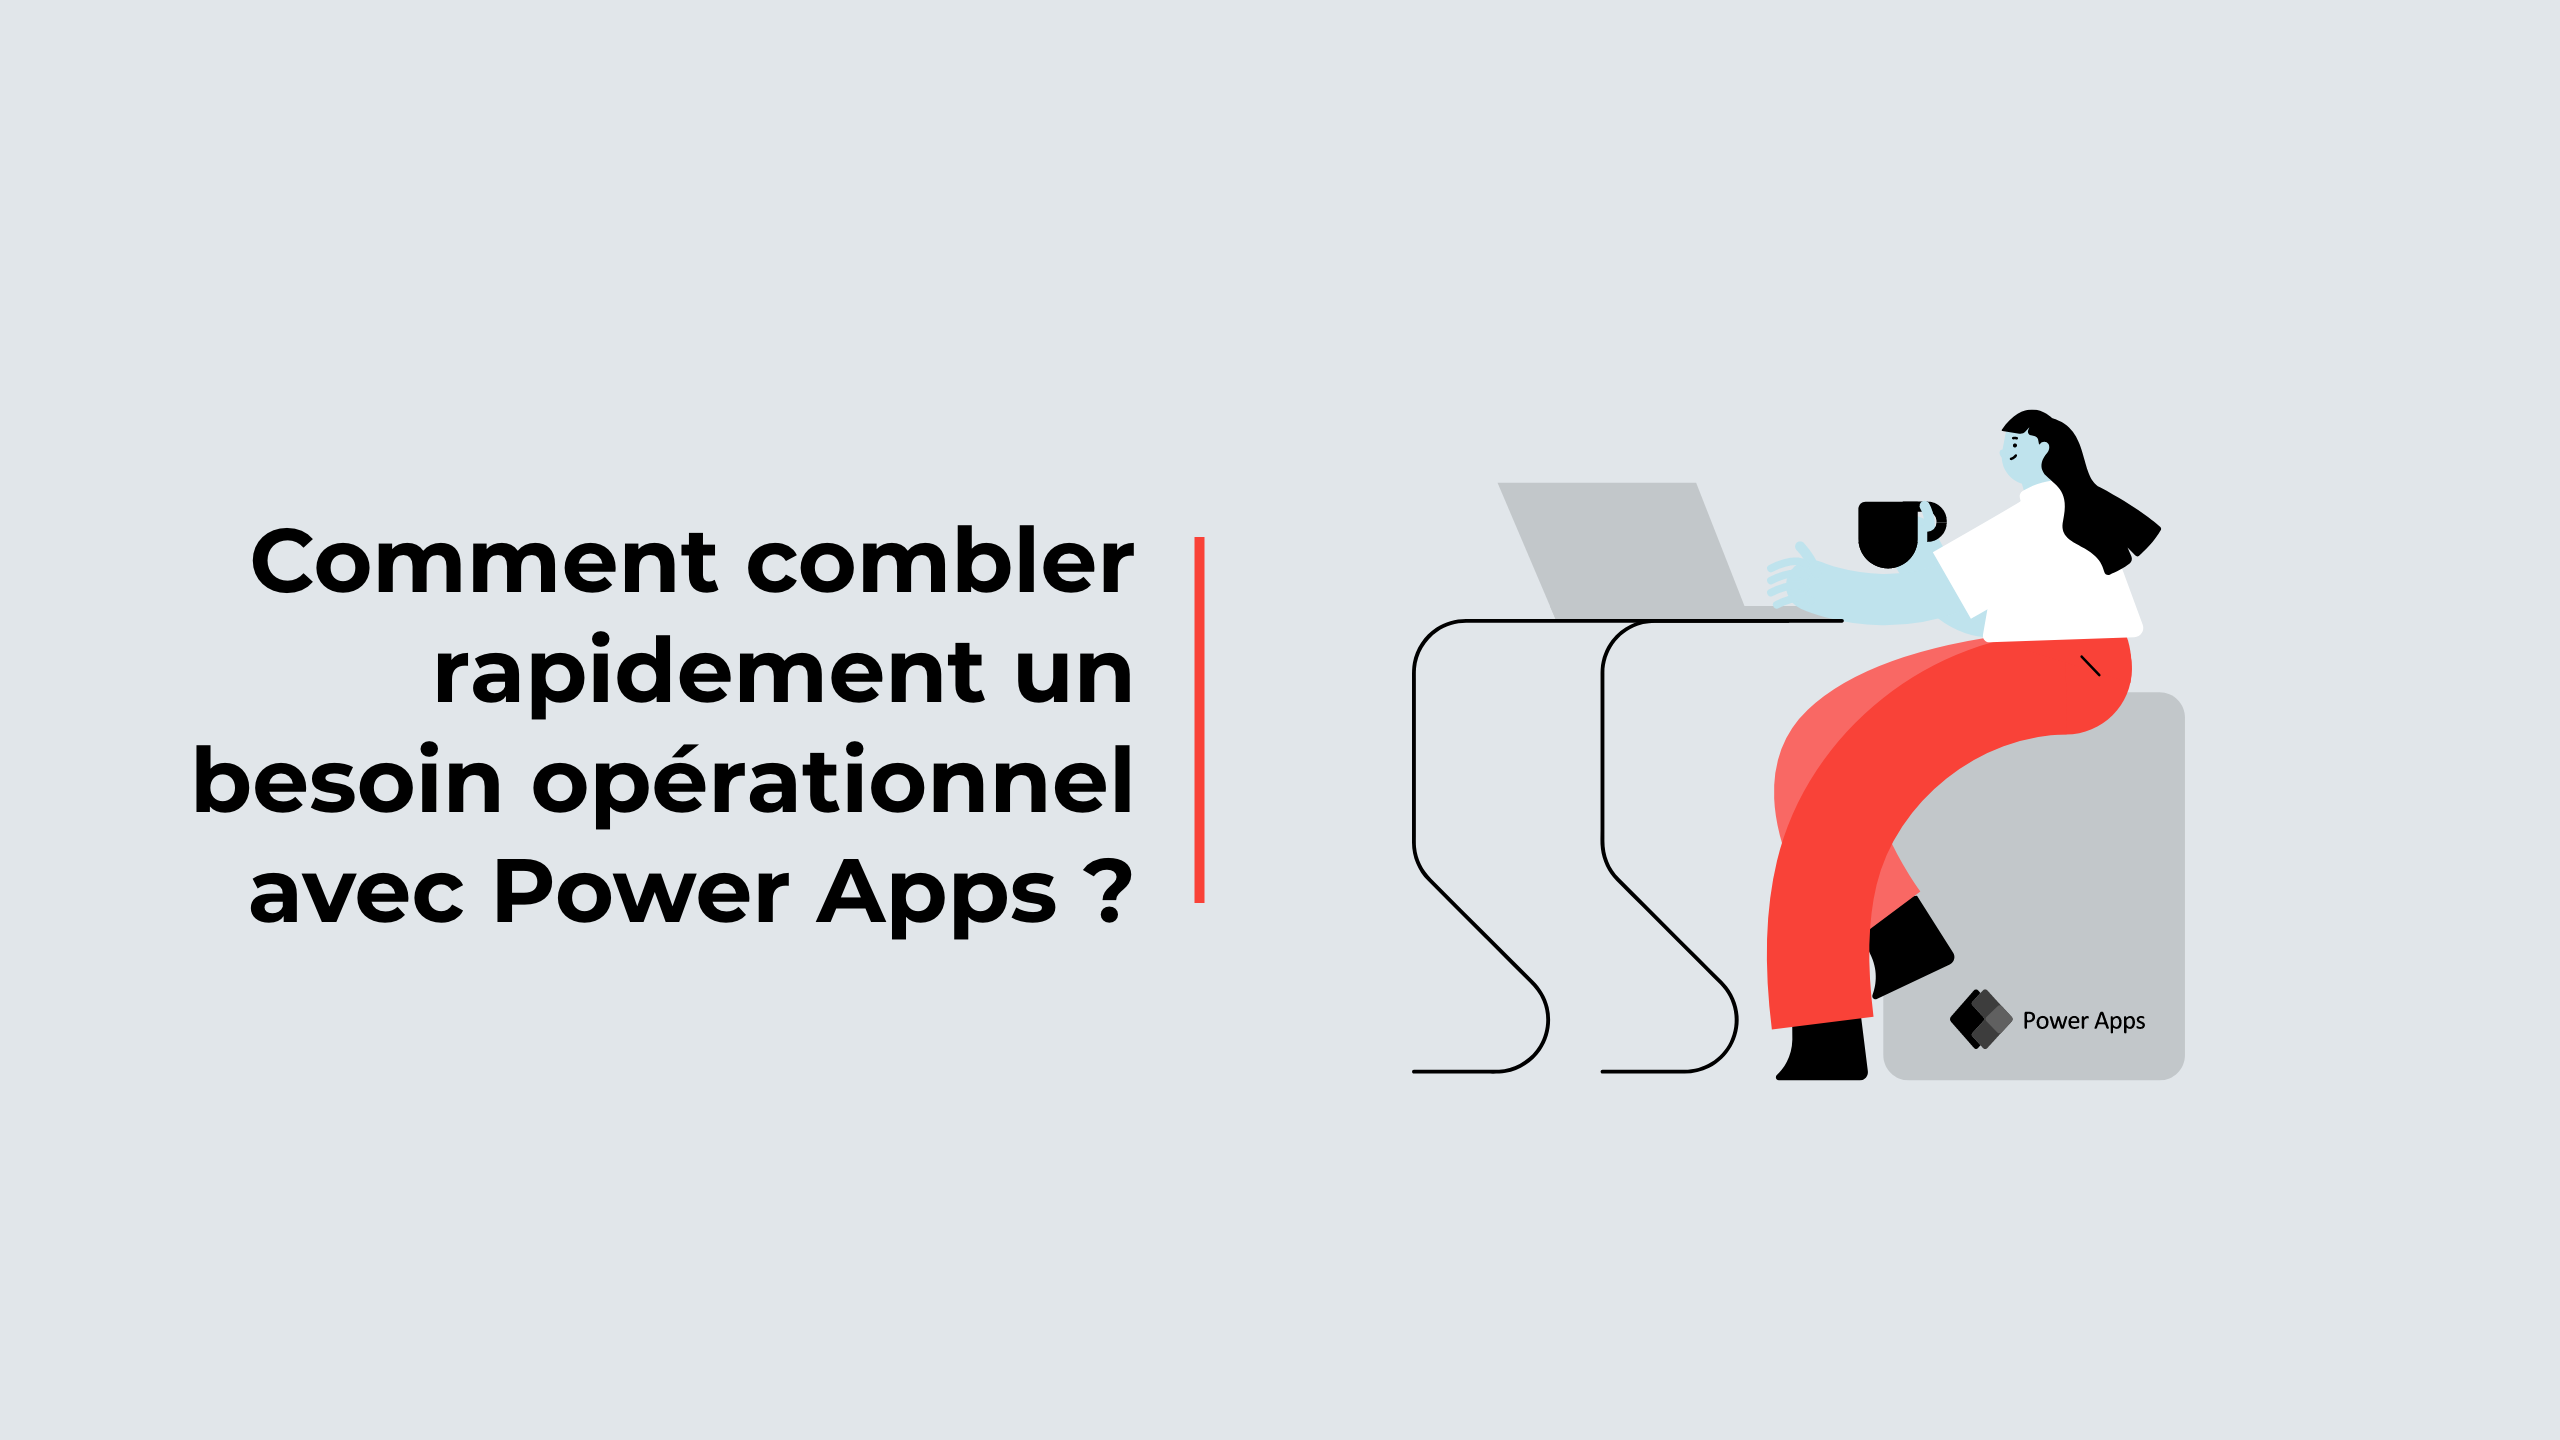 Comment combler rapidement un besoin opérationnel avec Power Apps ?